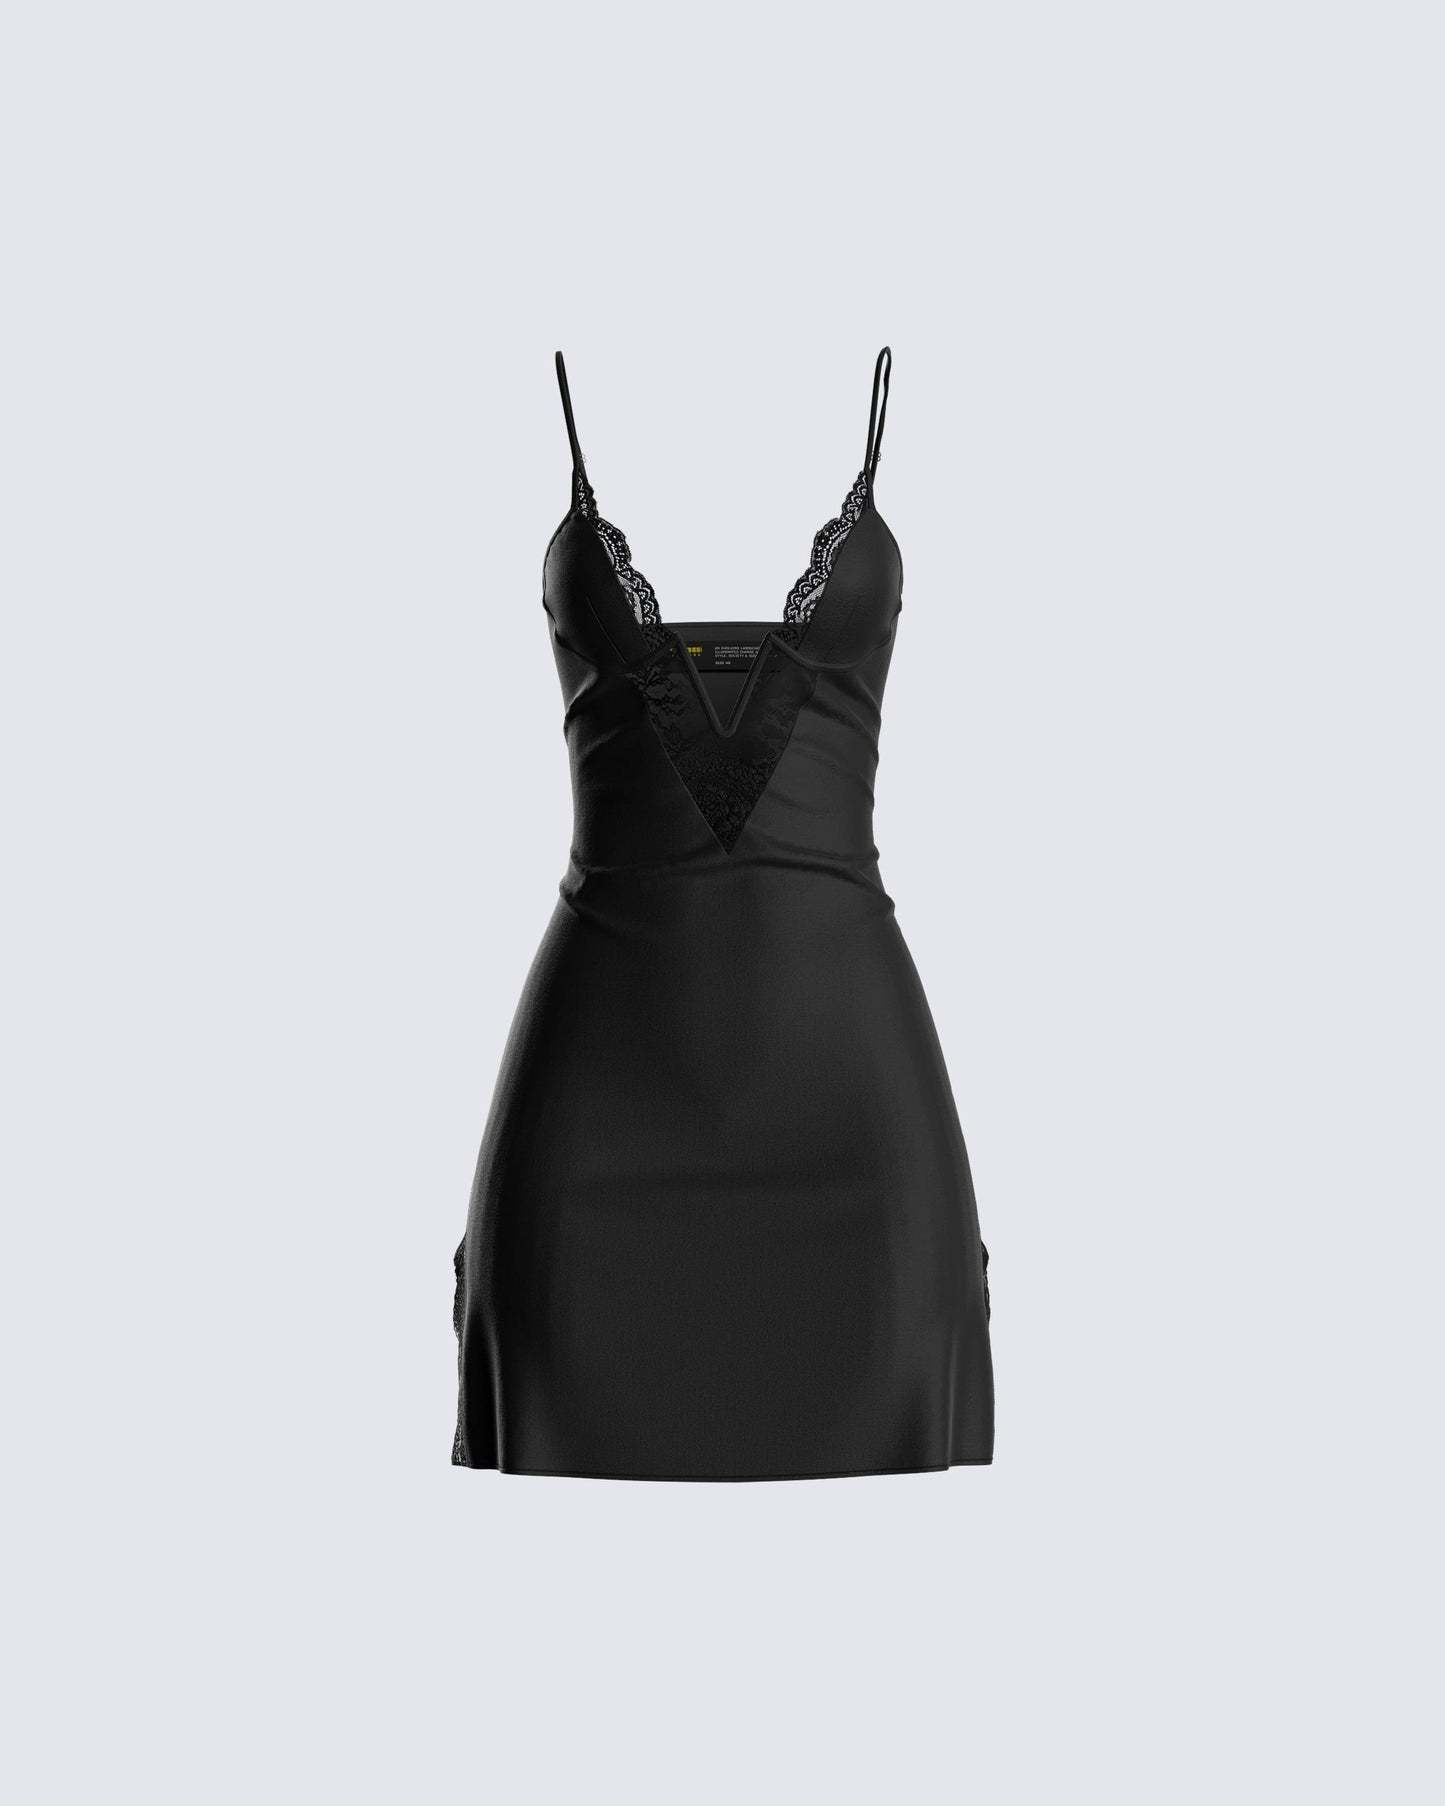 Ivy Black Lace Trim Mini Dress